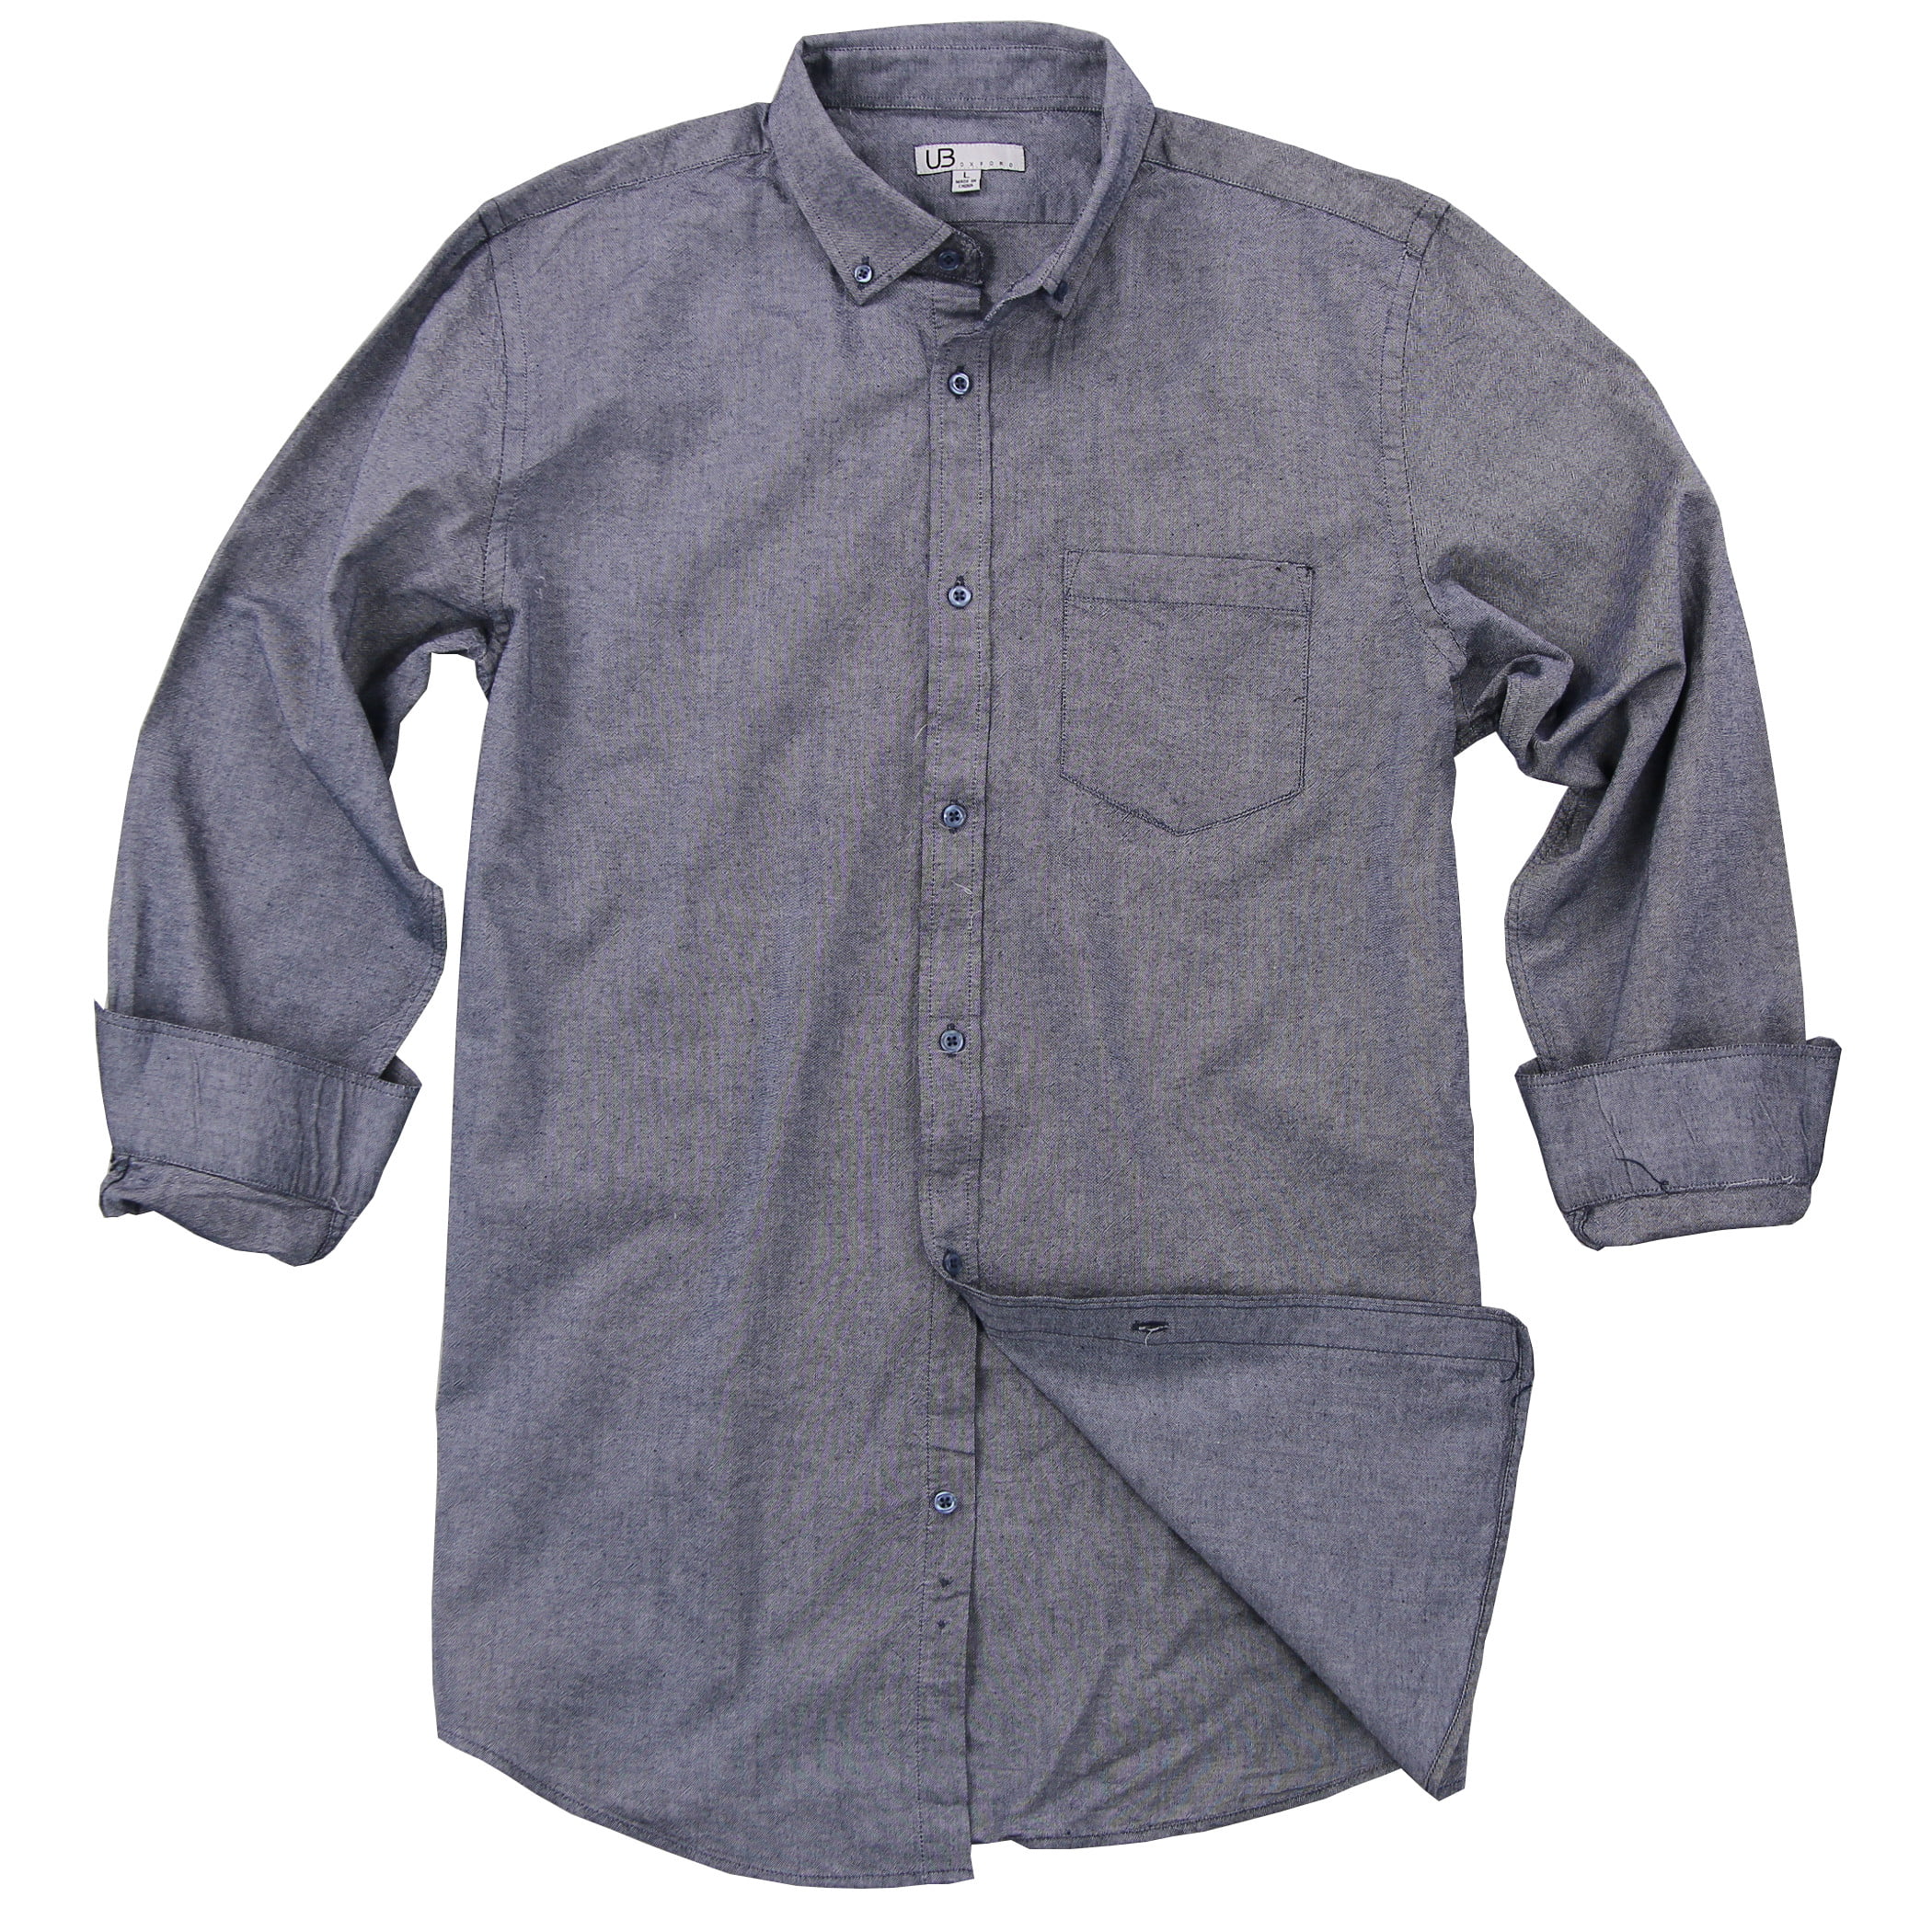 100 cotton button down shirts